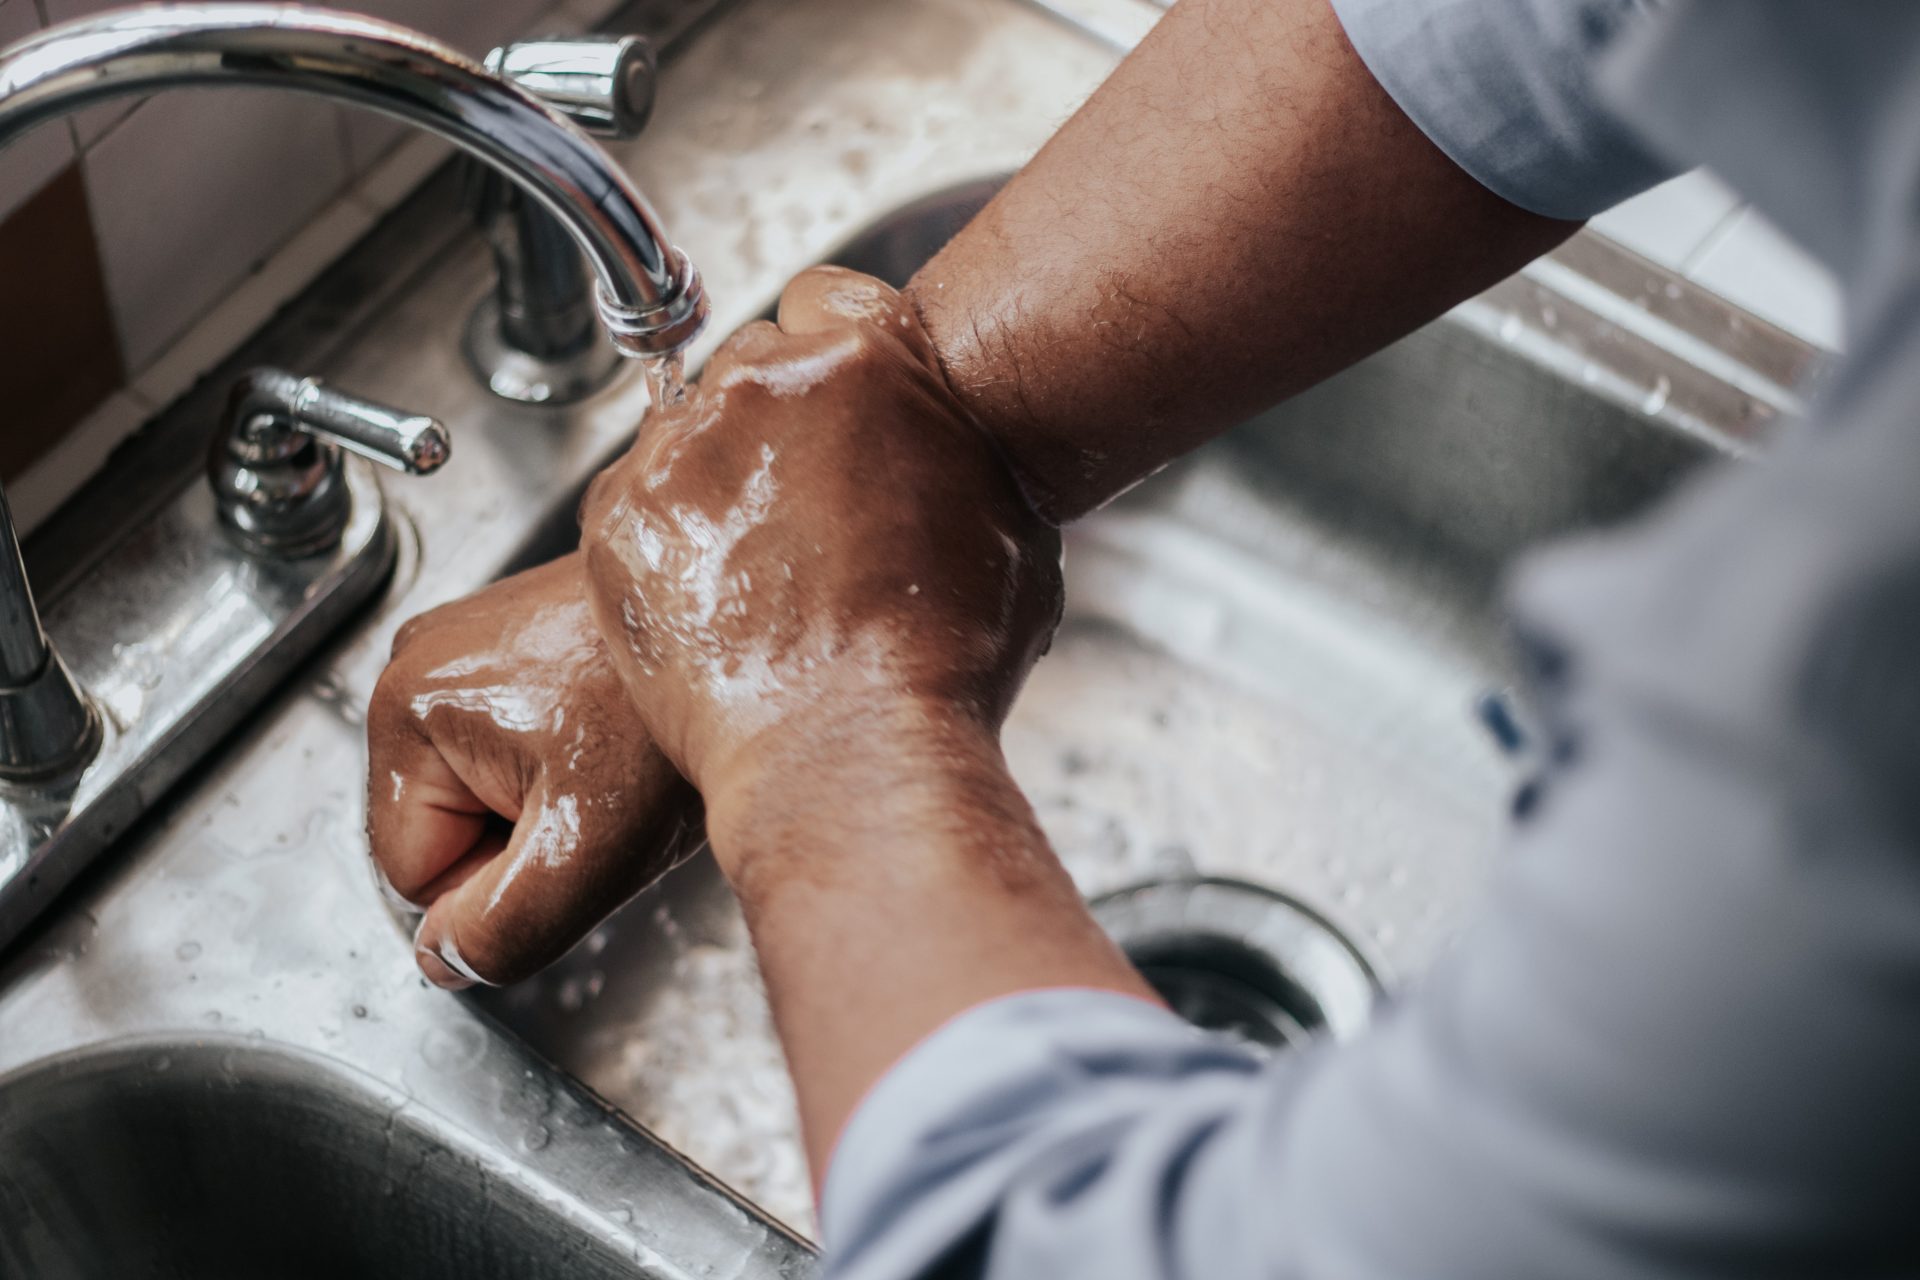 Washing hands in kitchen sink